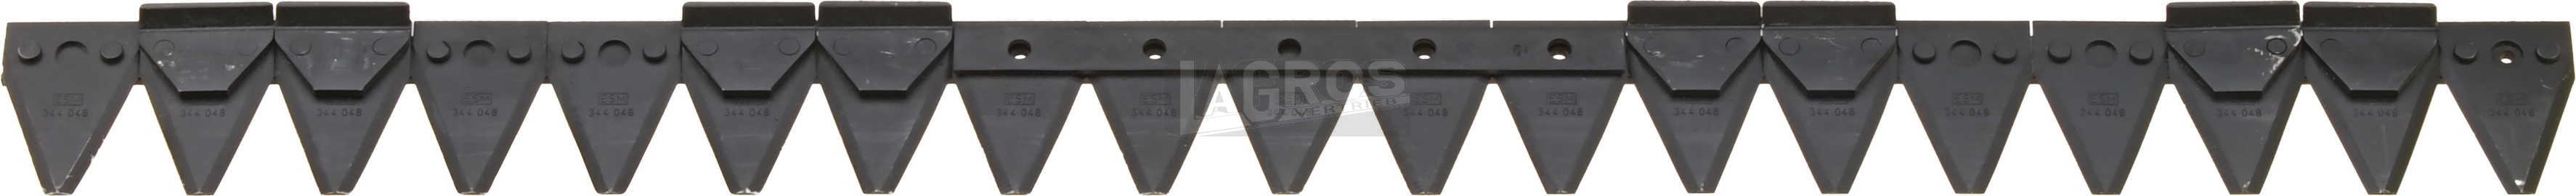 Agria Motorträgerplatte für Balkenmäher  Agria 5300 